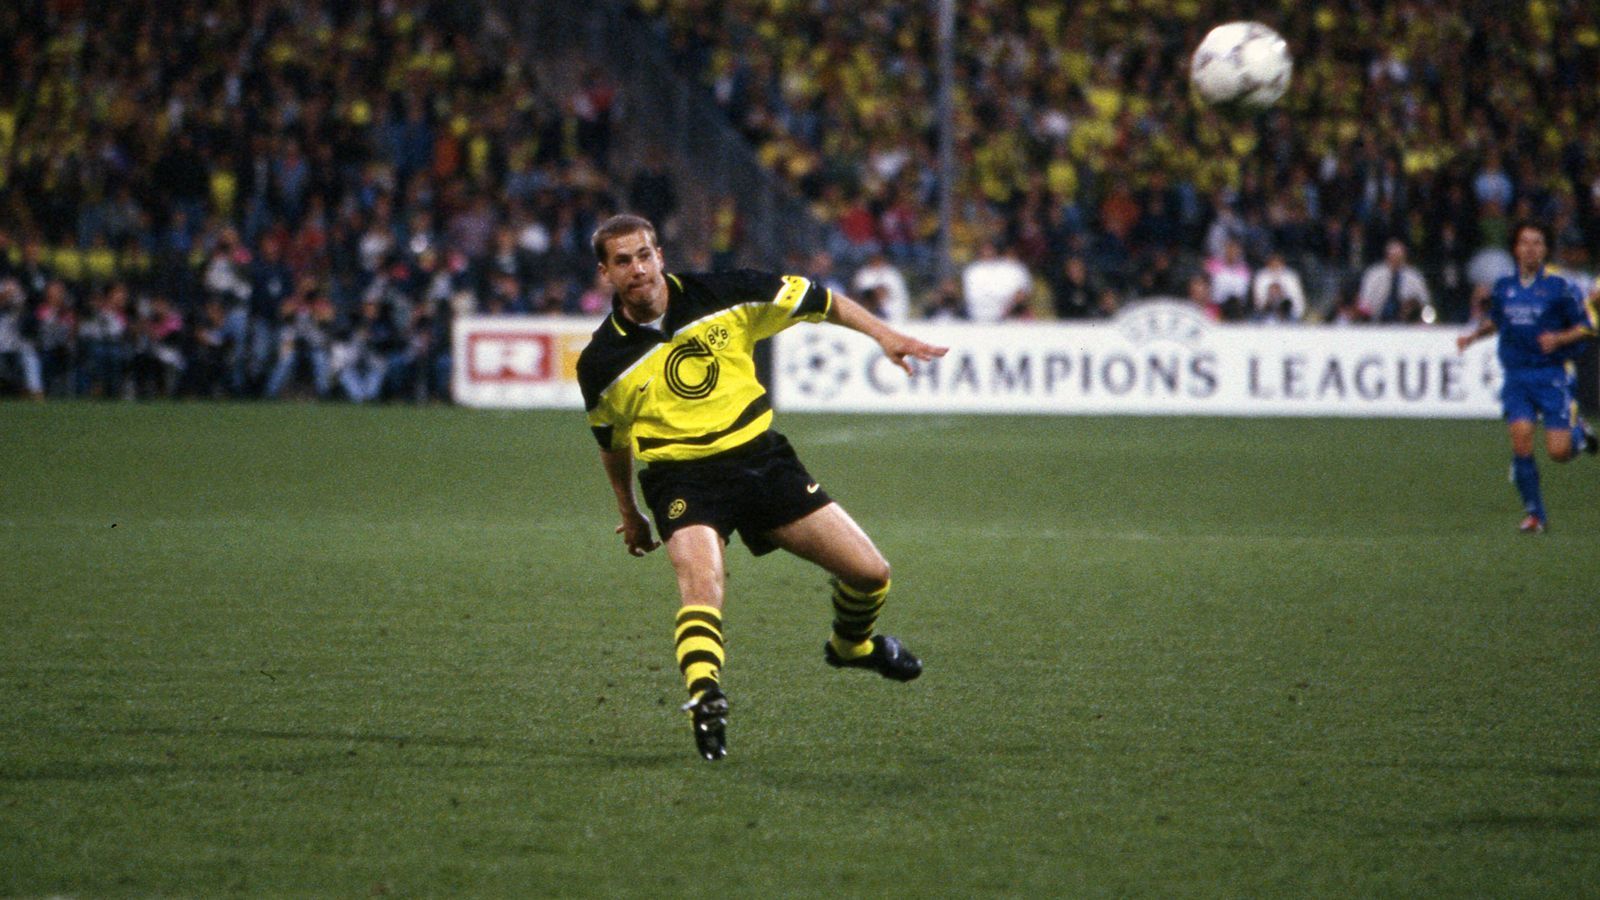 
                <strong>Lars Ricken</strong><br>
                Das ist die Szene, die Lars Ricken und den BVB gleichermaßen in die Geschichtsbücher des europäischen Fußballs katapultierte. Am 28. Mai 1997 kam Ricken in der 70. Minute des Champions-League-Endspiels gegen Juventus Turin aufs Feld und nur wenige Sekunden später erzielte der damals erst 20-Jährige per überragendem Lupfer den Treffer zum 3:1-Endstand. Danach drehte die Nummer 18 jubelnd ab und gut eine halbe Stunde später konnte der gebürtige Dortmunder den Henkelpott in den Münchner Abendhimmel stemmen. Später wurde Rickens Jokertor sogar zum "Tor des Jahrhunderts" gewählt. Zwar wurde Ricken mit dem BVB in weiterer Folge 2002 noch ein drittes Mal deutscher Meister, doch insgesamt war die Karriere des einstigen Wunderknaben von zahlreichen Verletzungen geprägt. Heute arbeitet der 44-Jährige als Nachwuchskoordinator bei Borussia Dortmund, lief als Aktiver zwischen 1993 und 2008 407 Mal für die Profis des Revierklubs auf. 
              